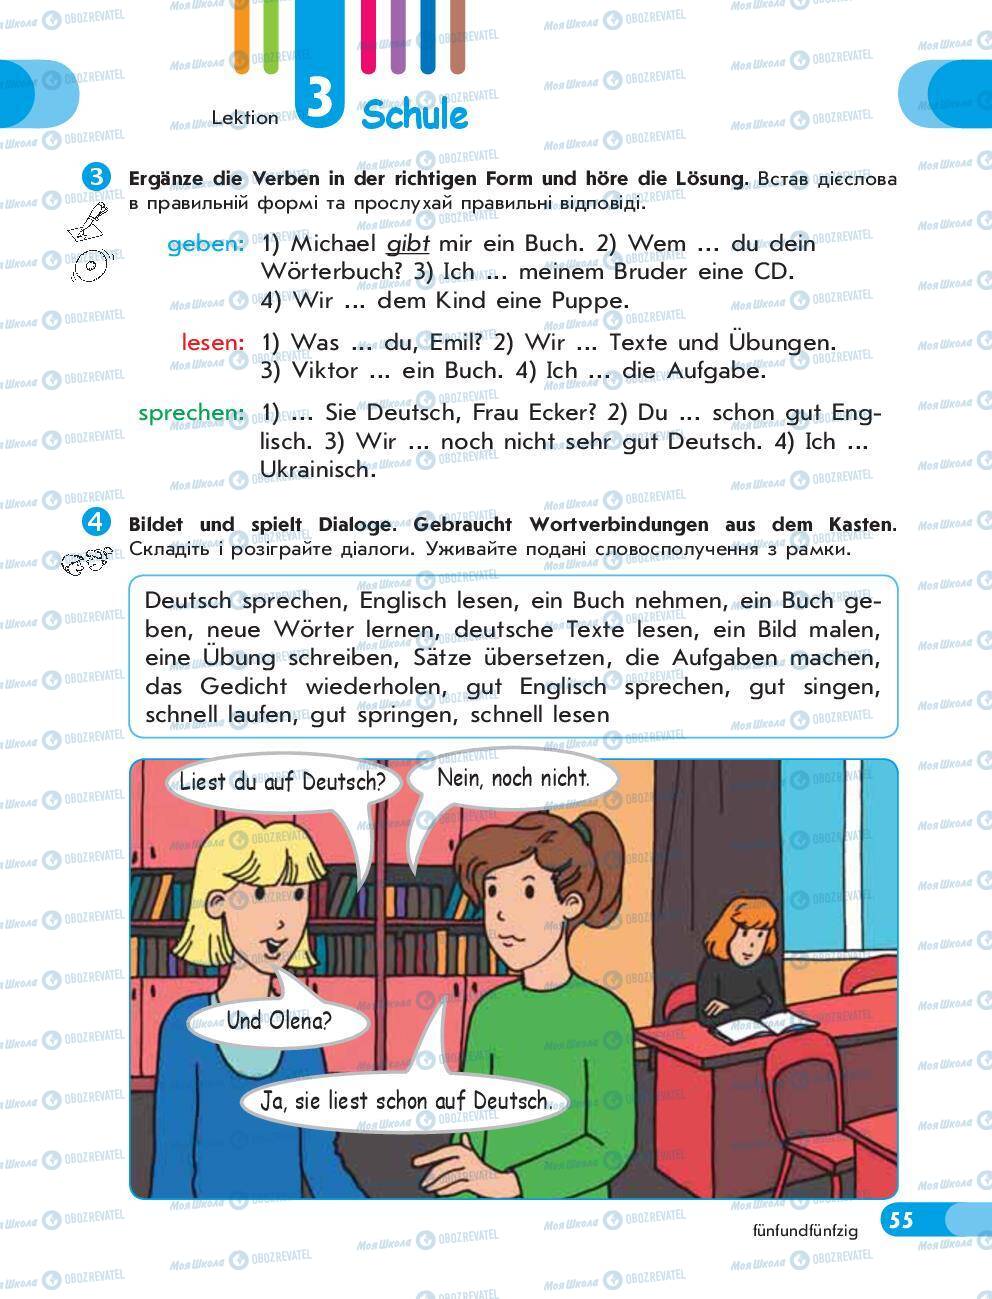 Підручники Німецька мова 5 клас сторінка 55